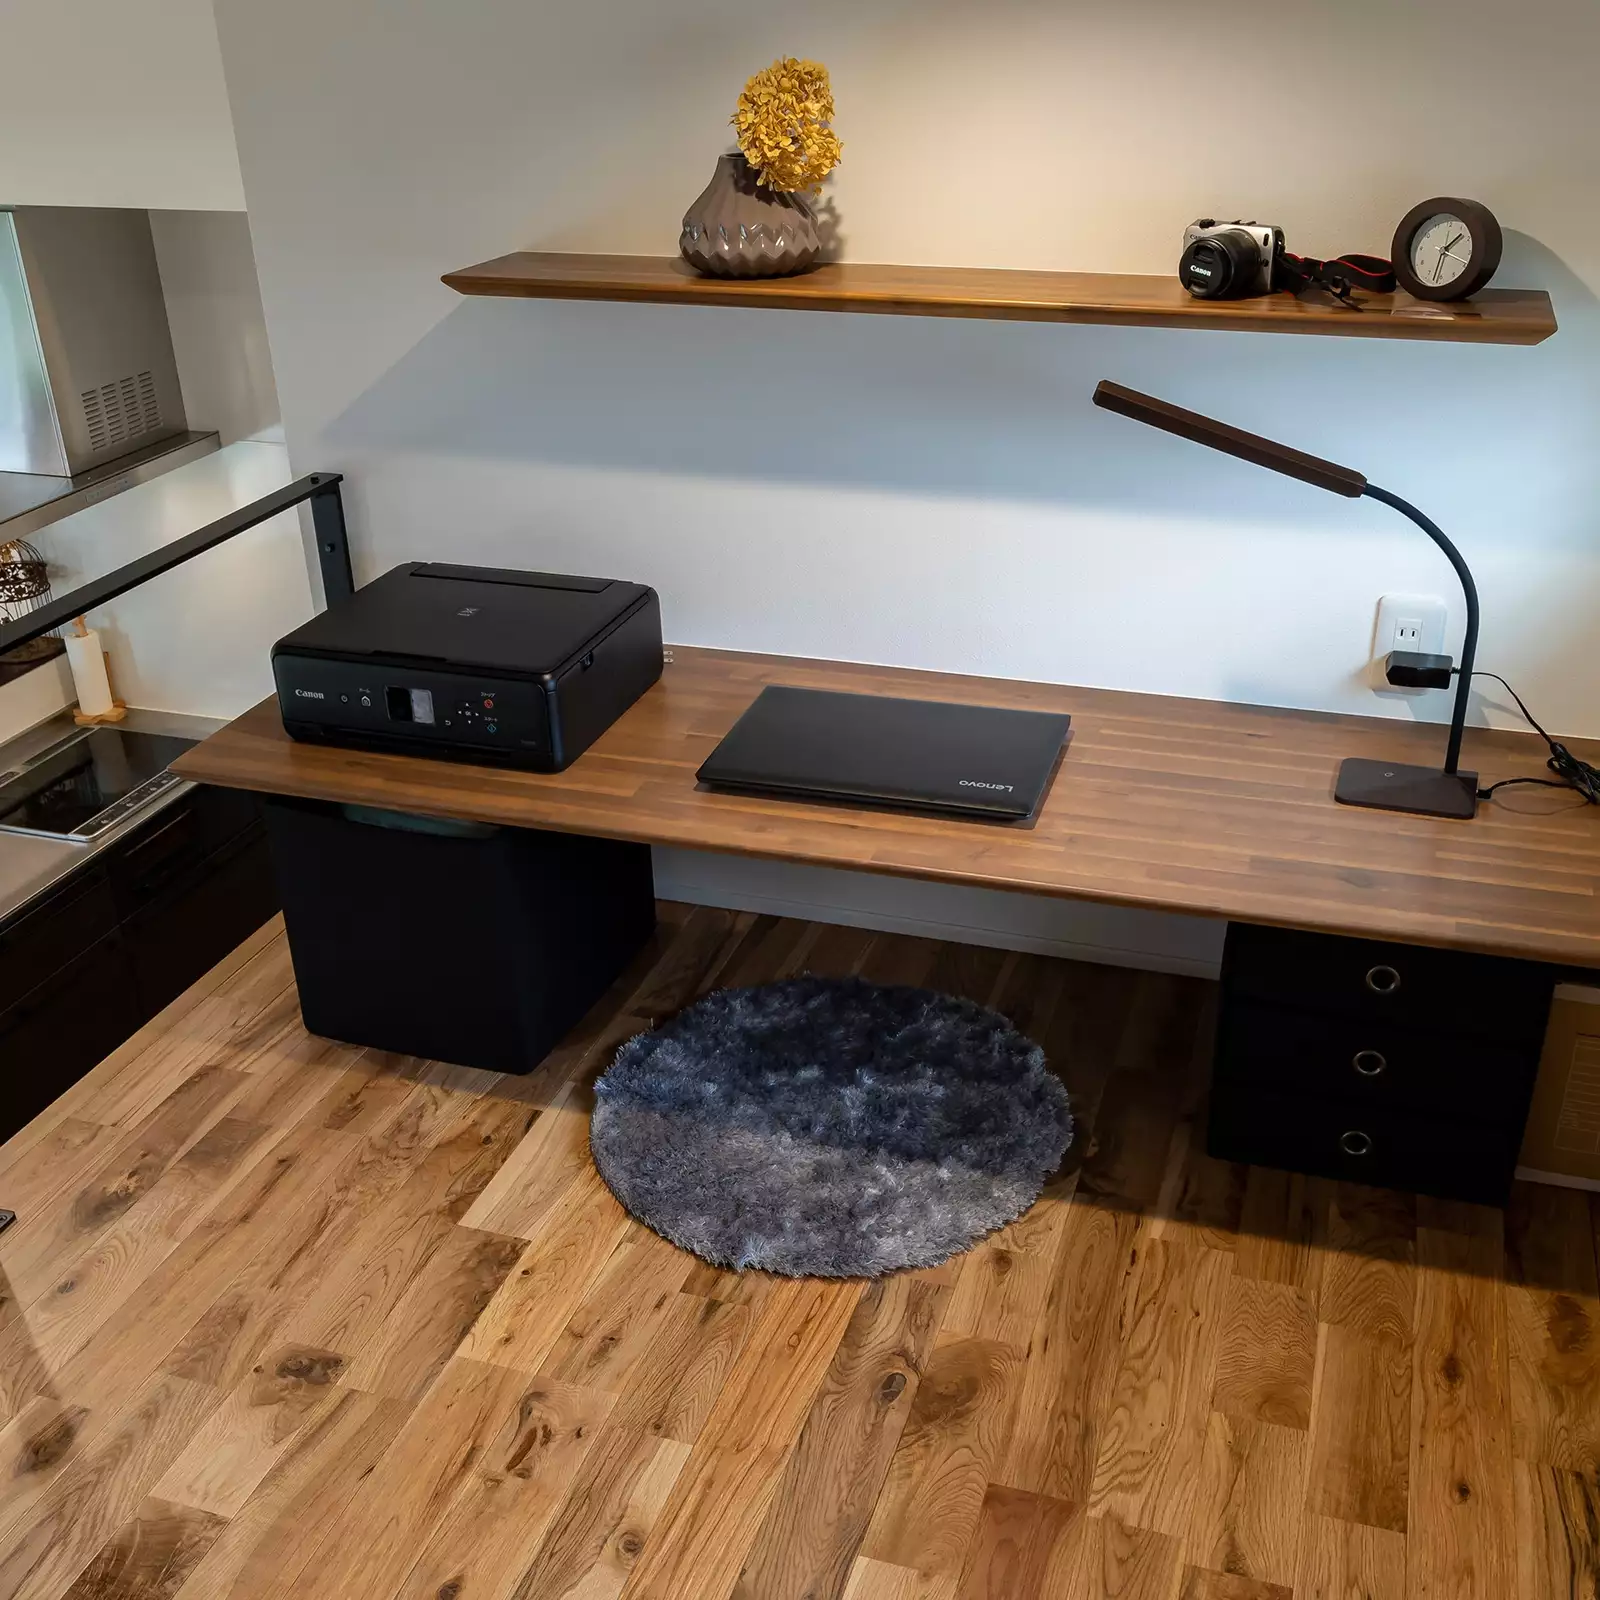 R+houseの物件の書斎の写真です。作り付けのテーブルは床に座って作業ができる高さ。左側にはキッチンが見下ろせる。